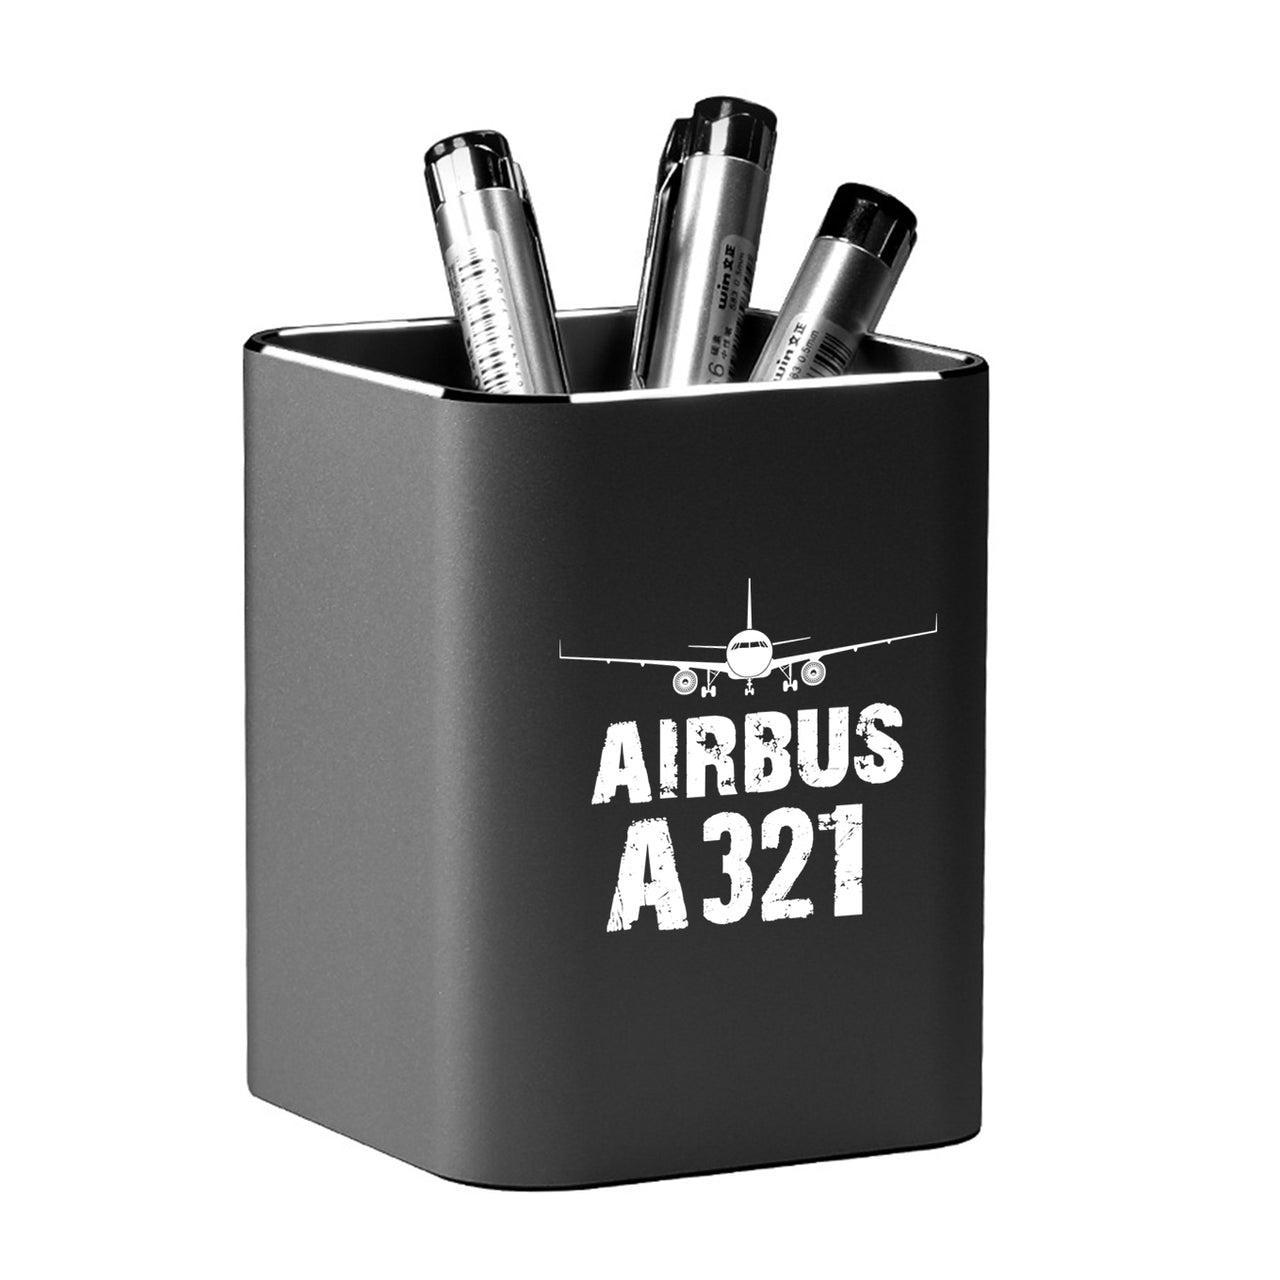 Airbus A321 & Plane Designed Aluminium Alloy Pen Holders